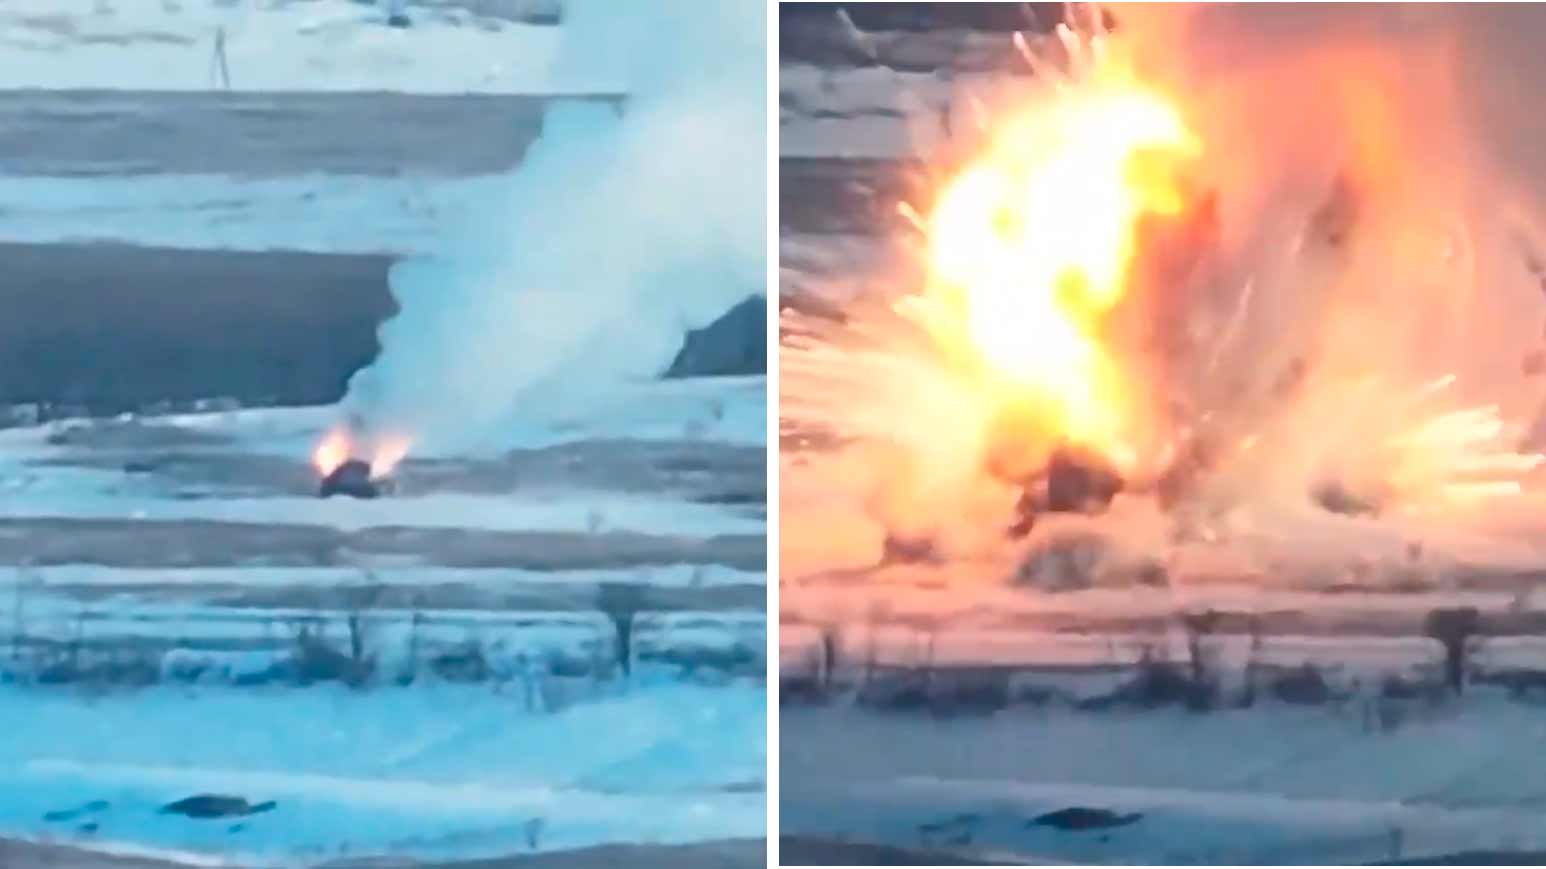 Vídeo: Dron ucraniano destruye lanzador de cohetes ruso TOS-1A y provoca una explosión gigantesca. Fotos y vídeos: Reproducción Twitter @Twiter549856871